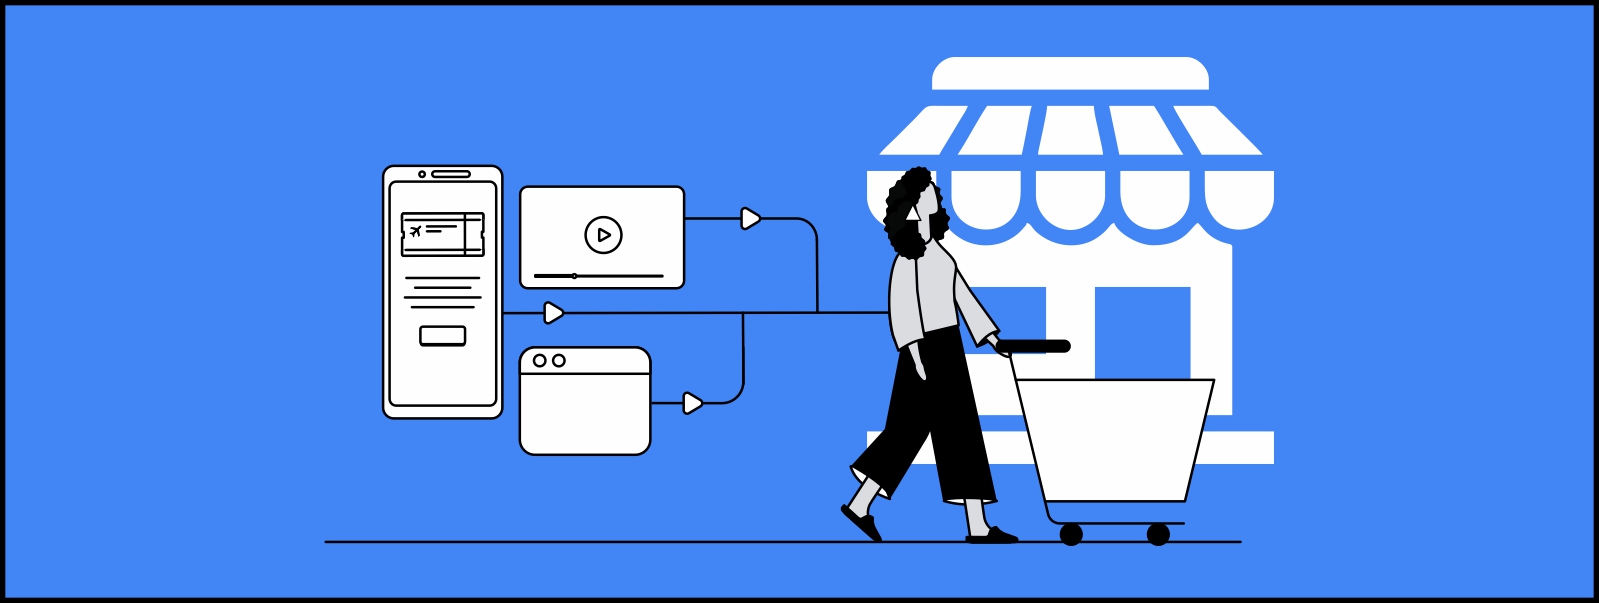 Un anuncio online que se muestra en distintas pantallas y dispositivos se interconectan con flechas mientras una mujer con un carrito de compras ingresa a una tienda física.